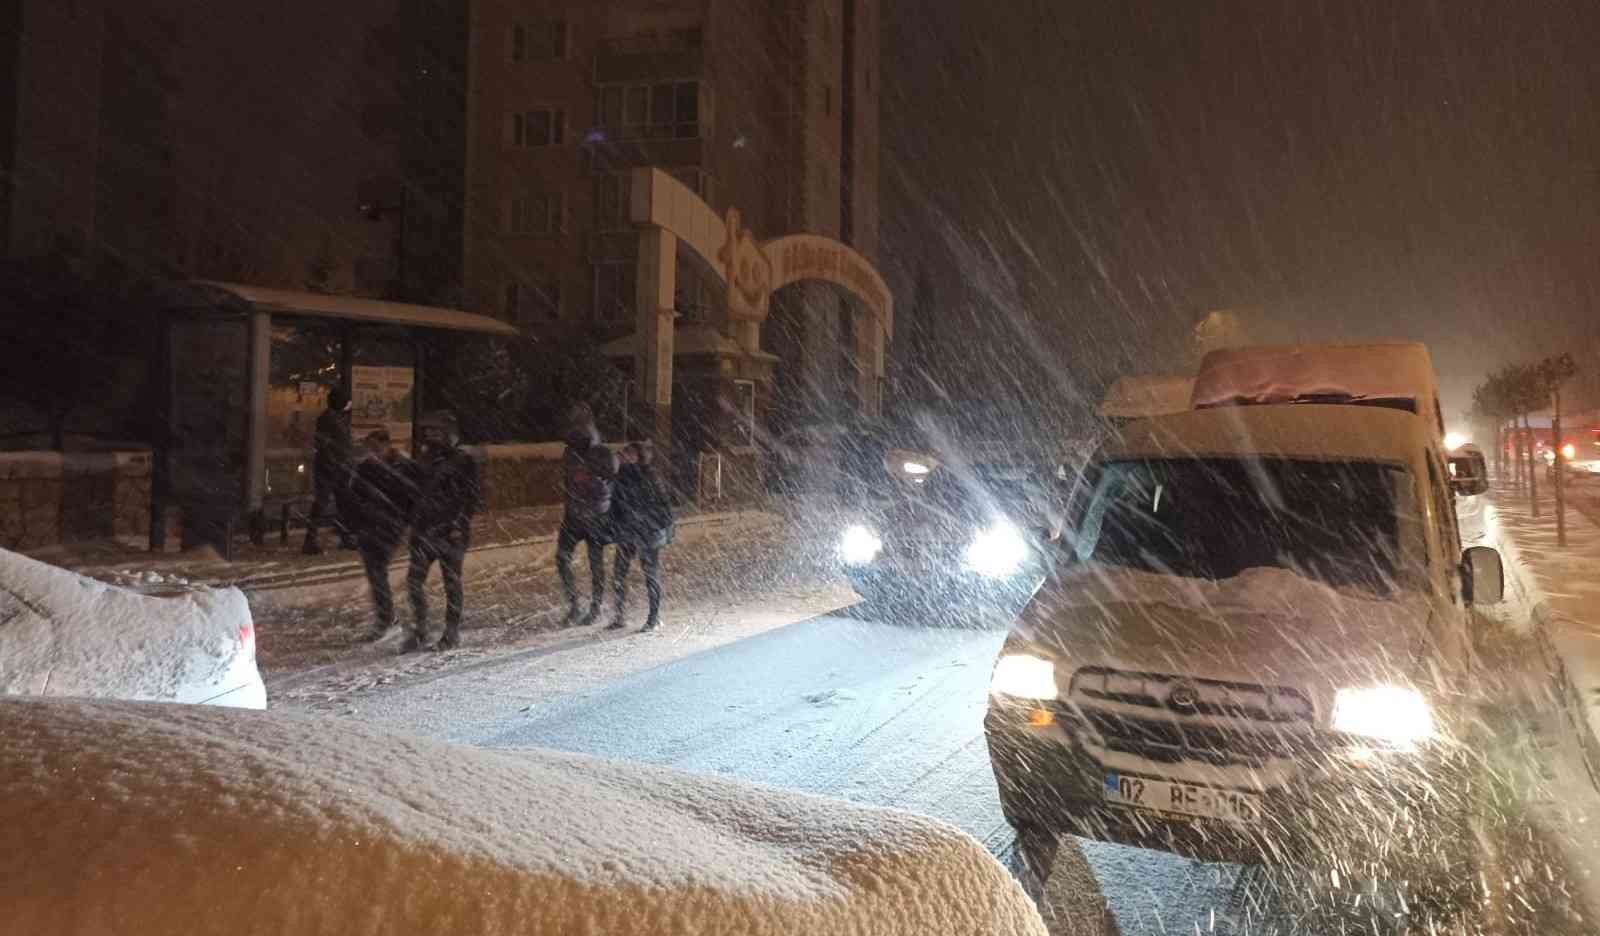 Adıyaman’da kar esareti: Kilometrelerce uzunluğunda araç kuyruğu #adiyaman